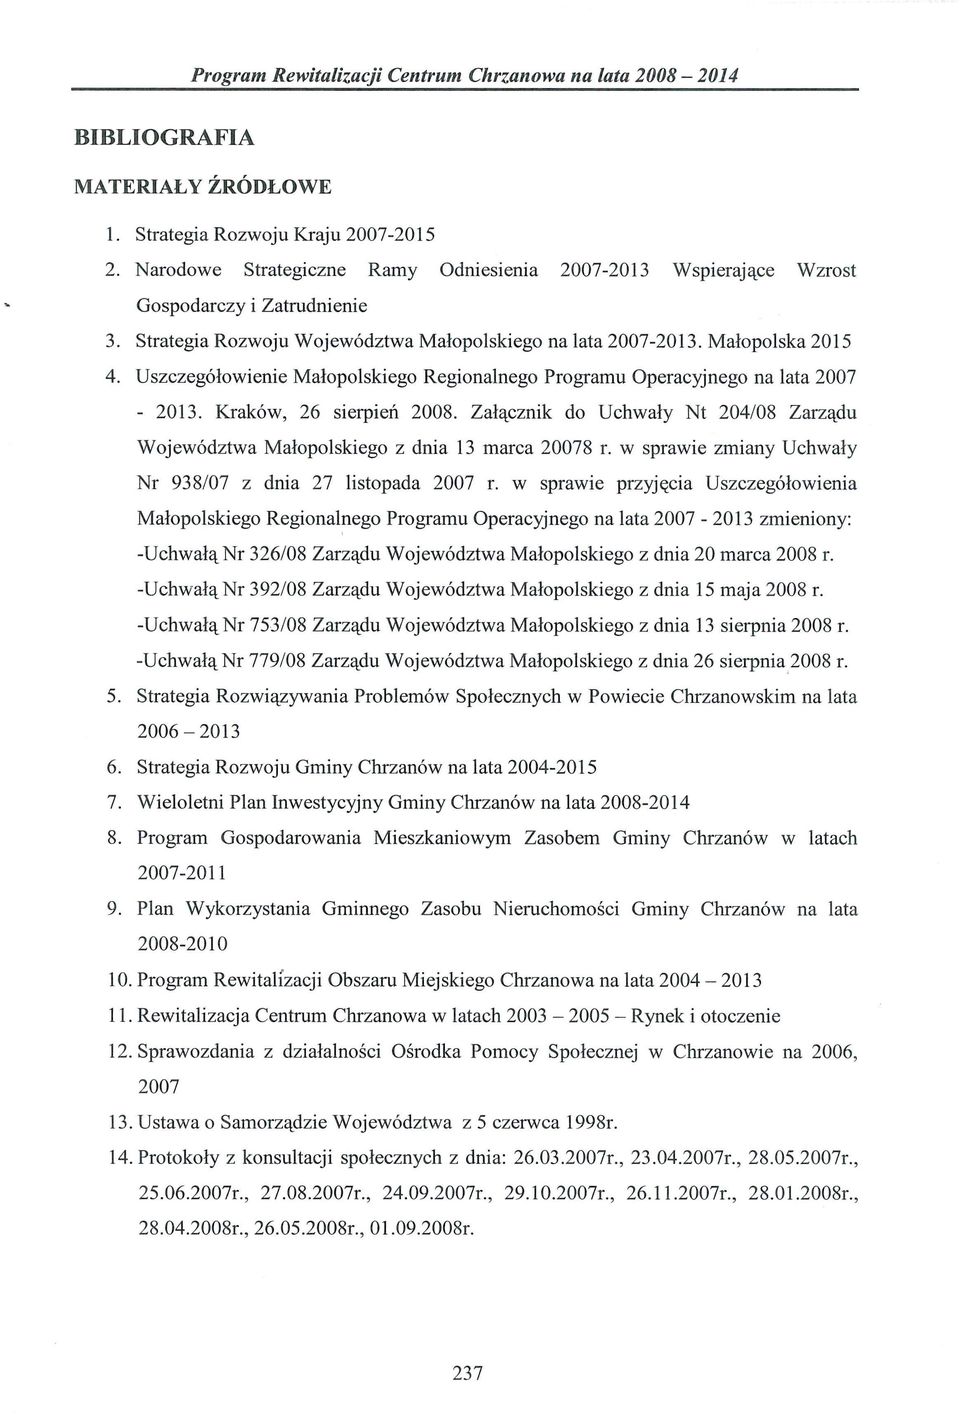 Załącznik do Uchwały Nt 204/08 Zarządu Województwa Małopolskiego z dnia 13 marca 20078 r. w sprawie zmiany Uchwały Nr 938/07 z dnia 27 listopada 2007 r.